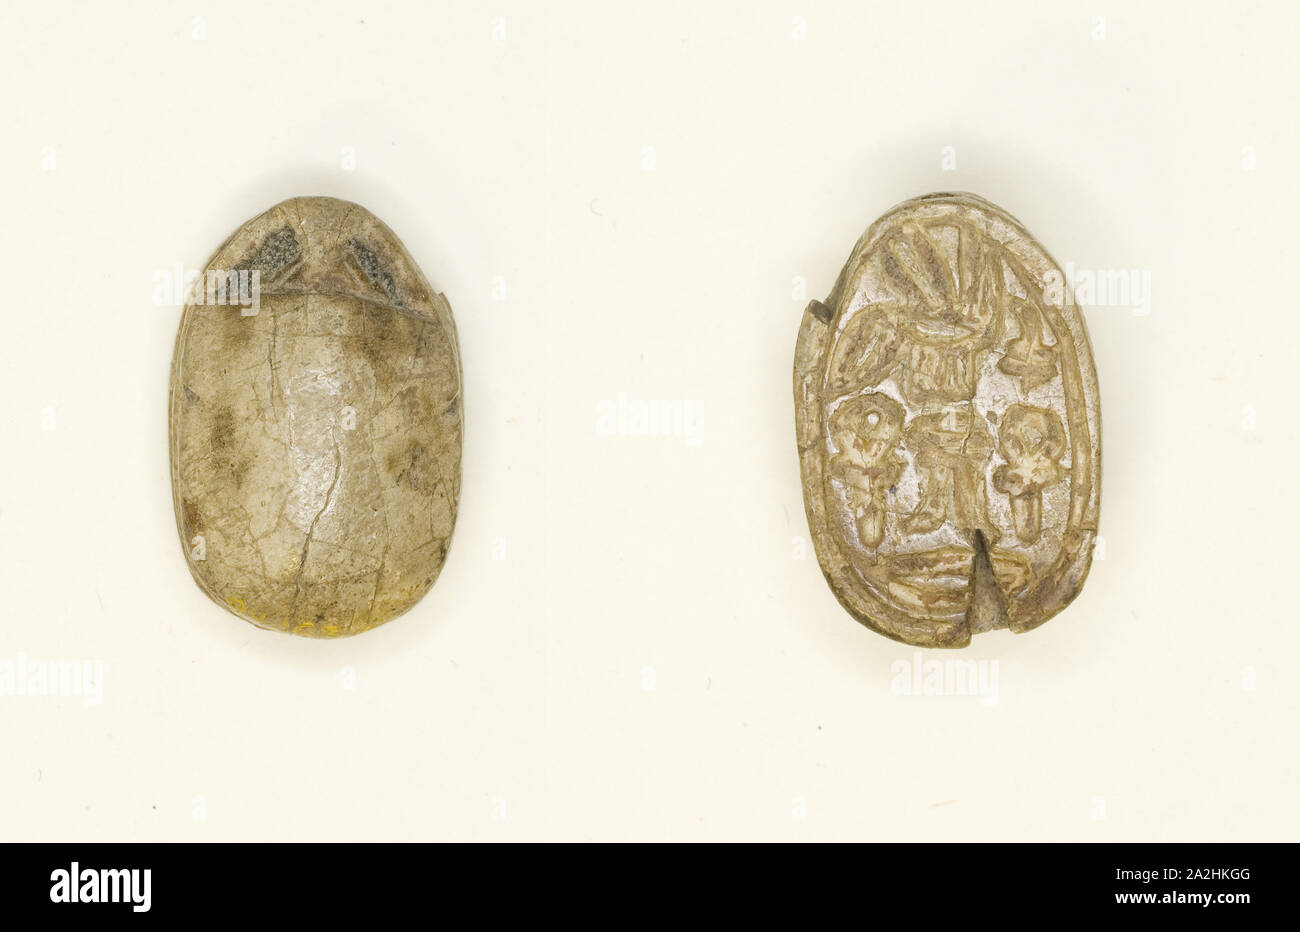 Scarabeo: geroglifici (nsw-bity, Dd, anx, nb), Medio Regno, dinastie 12-14 (circa 1985-1650 BC), egiziano, Egitto, steatite, 1,6 × 1,1 × 0,6 cm (5/8 × 7/16 × 1/4 in Foto Stock